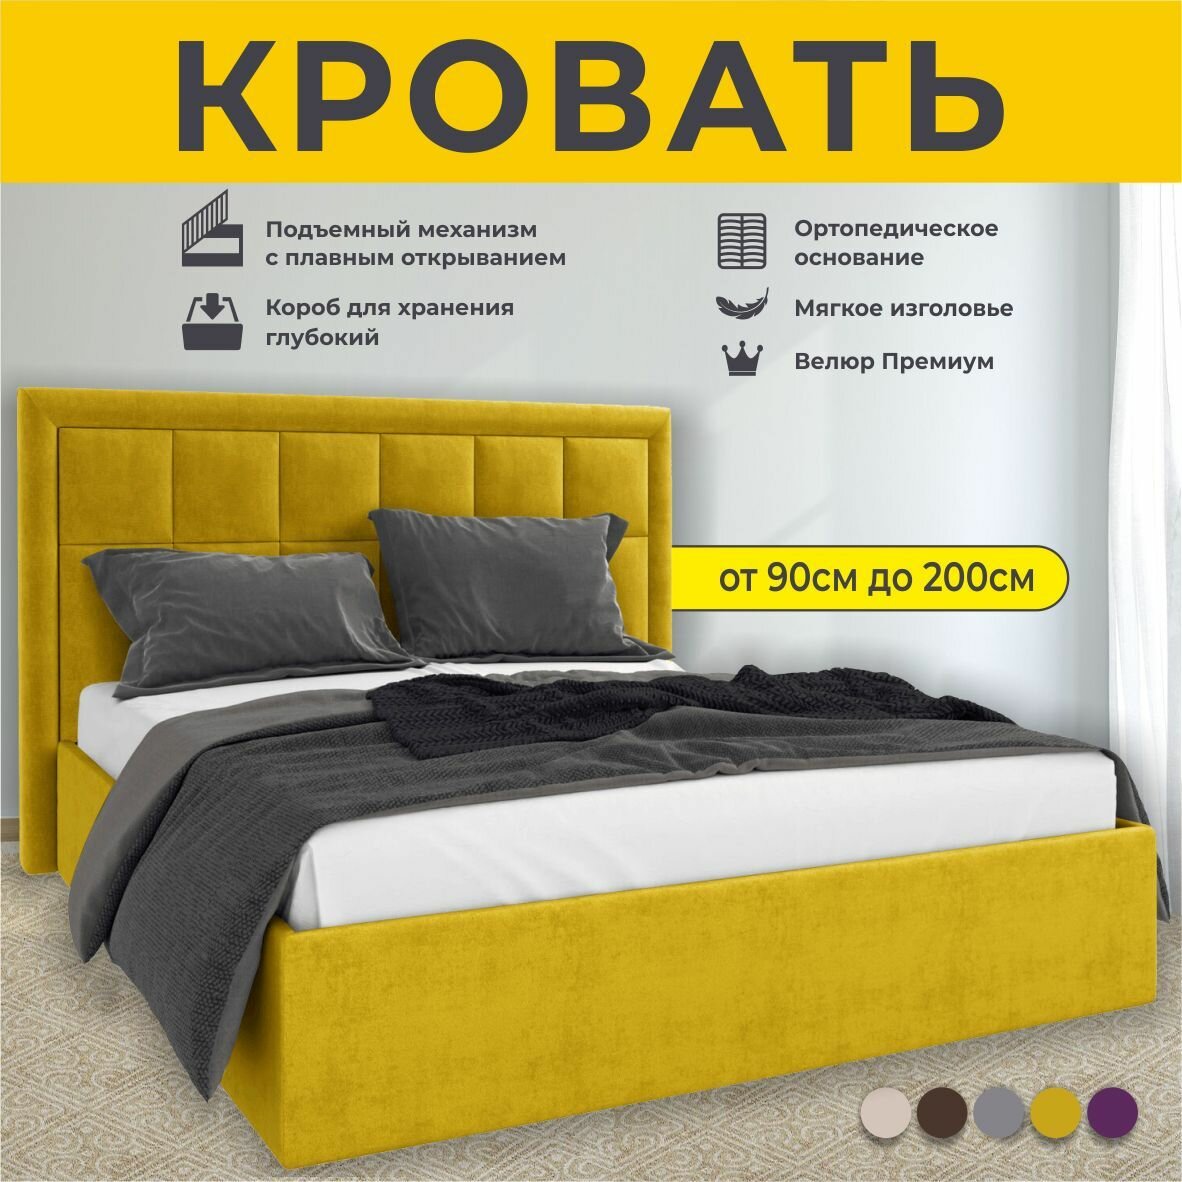 Кровать двуспальная 180Х200 см Sofia, с подъемным механизмом, FABRO, с ортопедическим основанием, с мягким изголовьем, Желтый